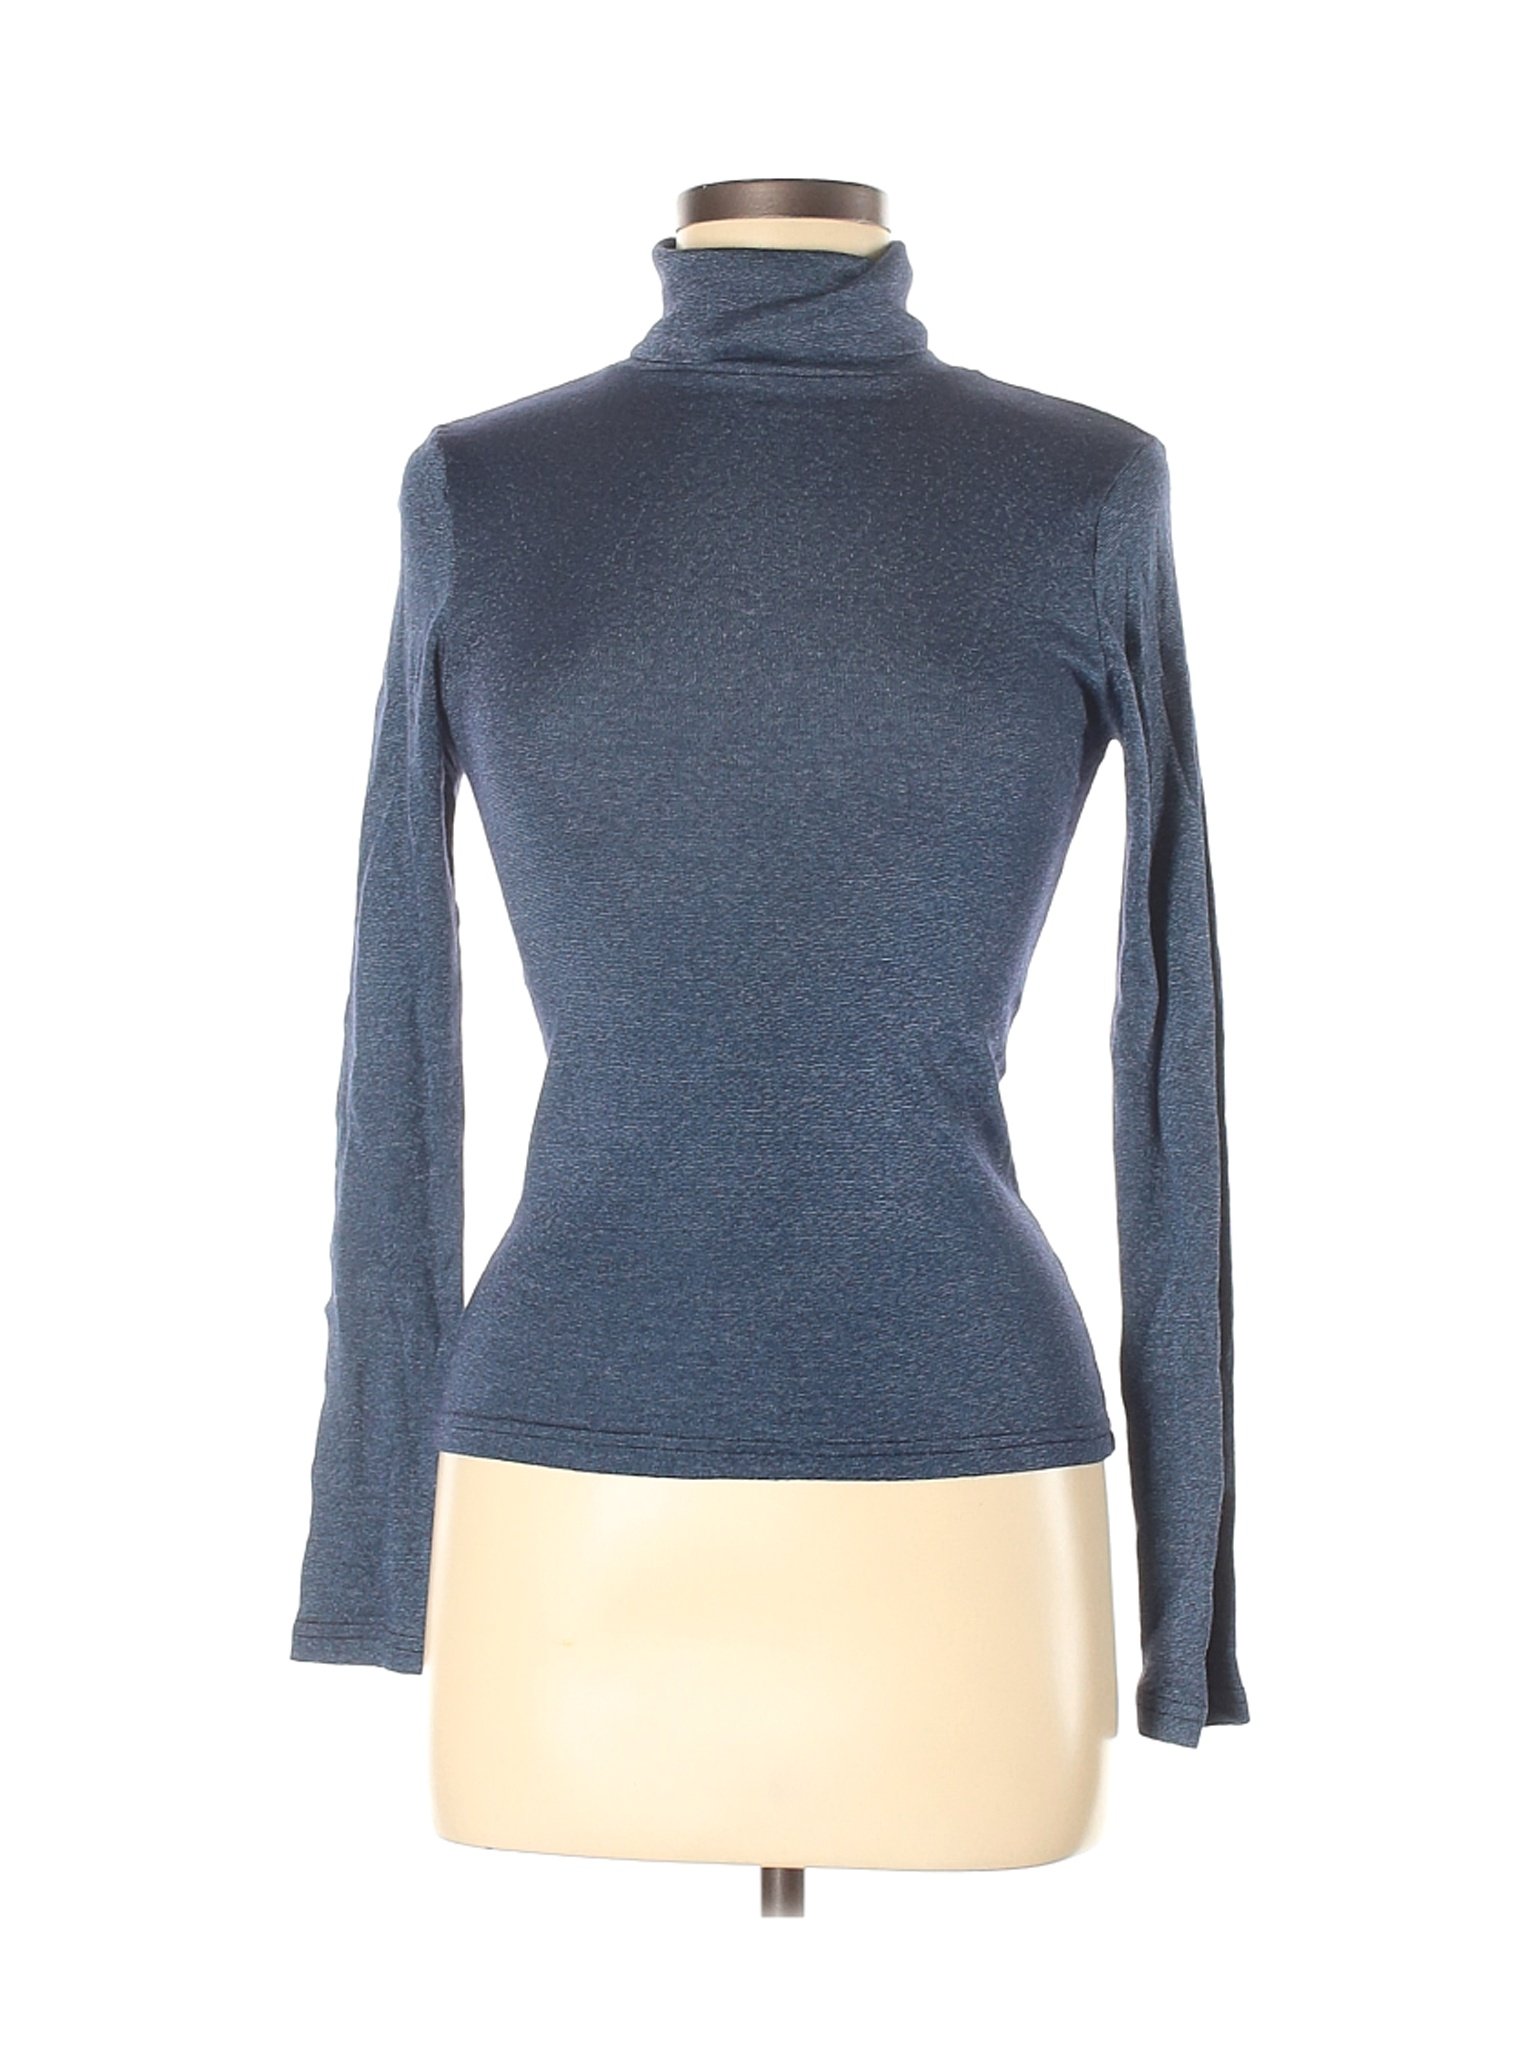 Michael Stars Women Blue Long Sleeve Turtleneck One Size | eBay